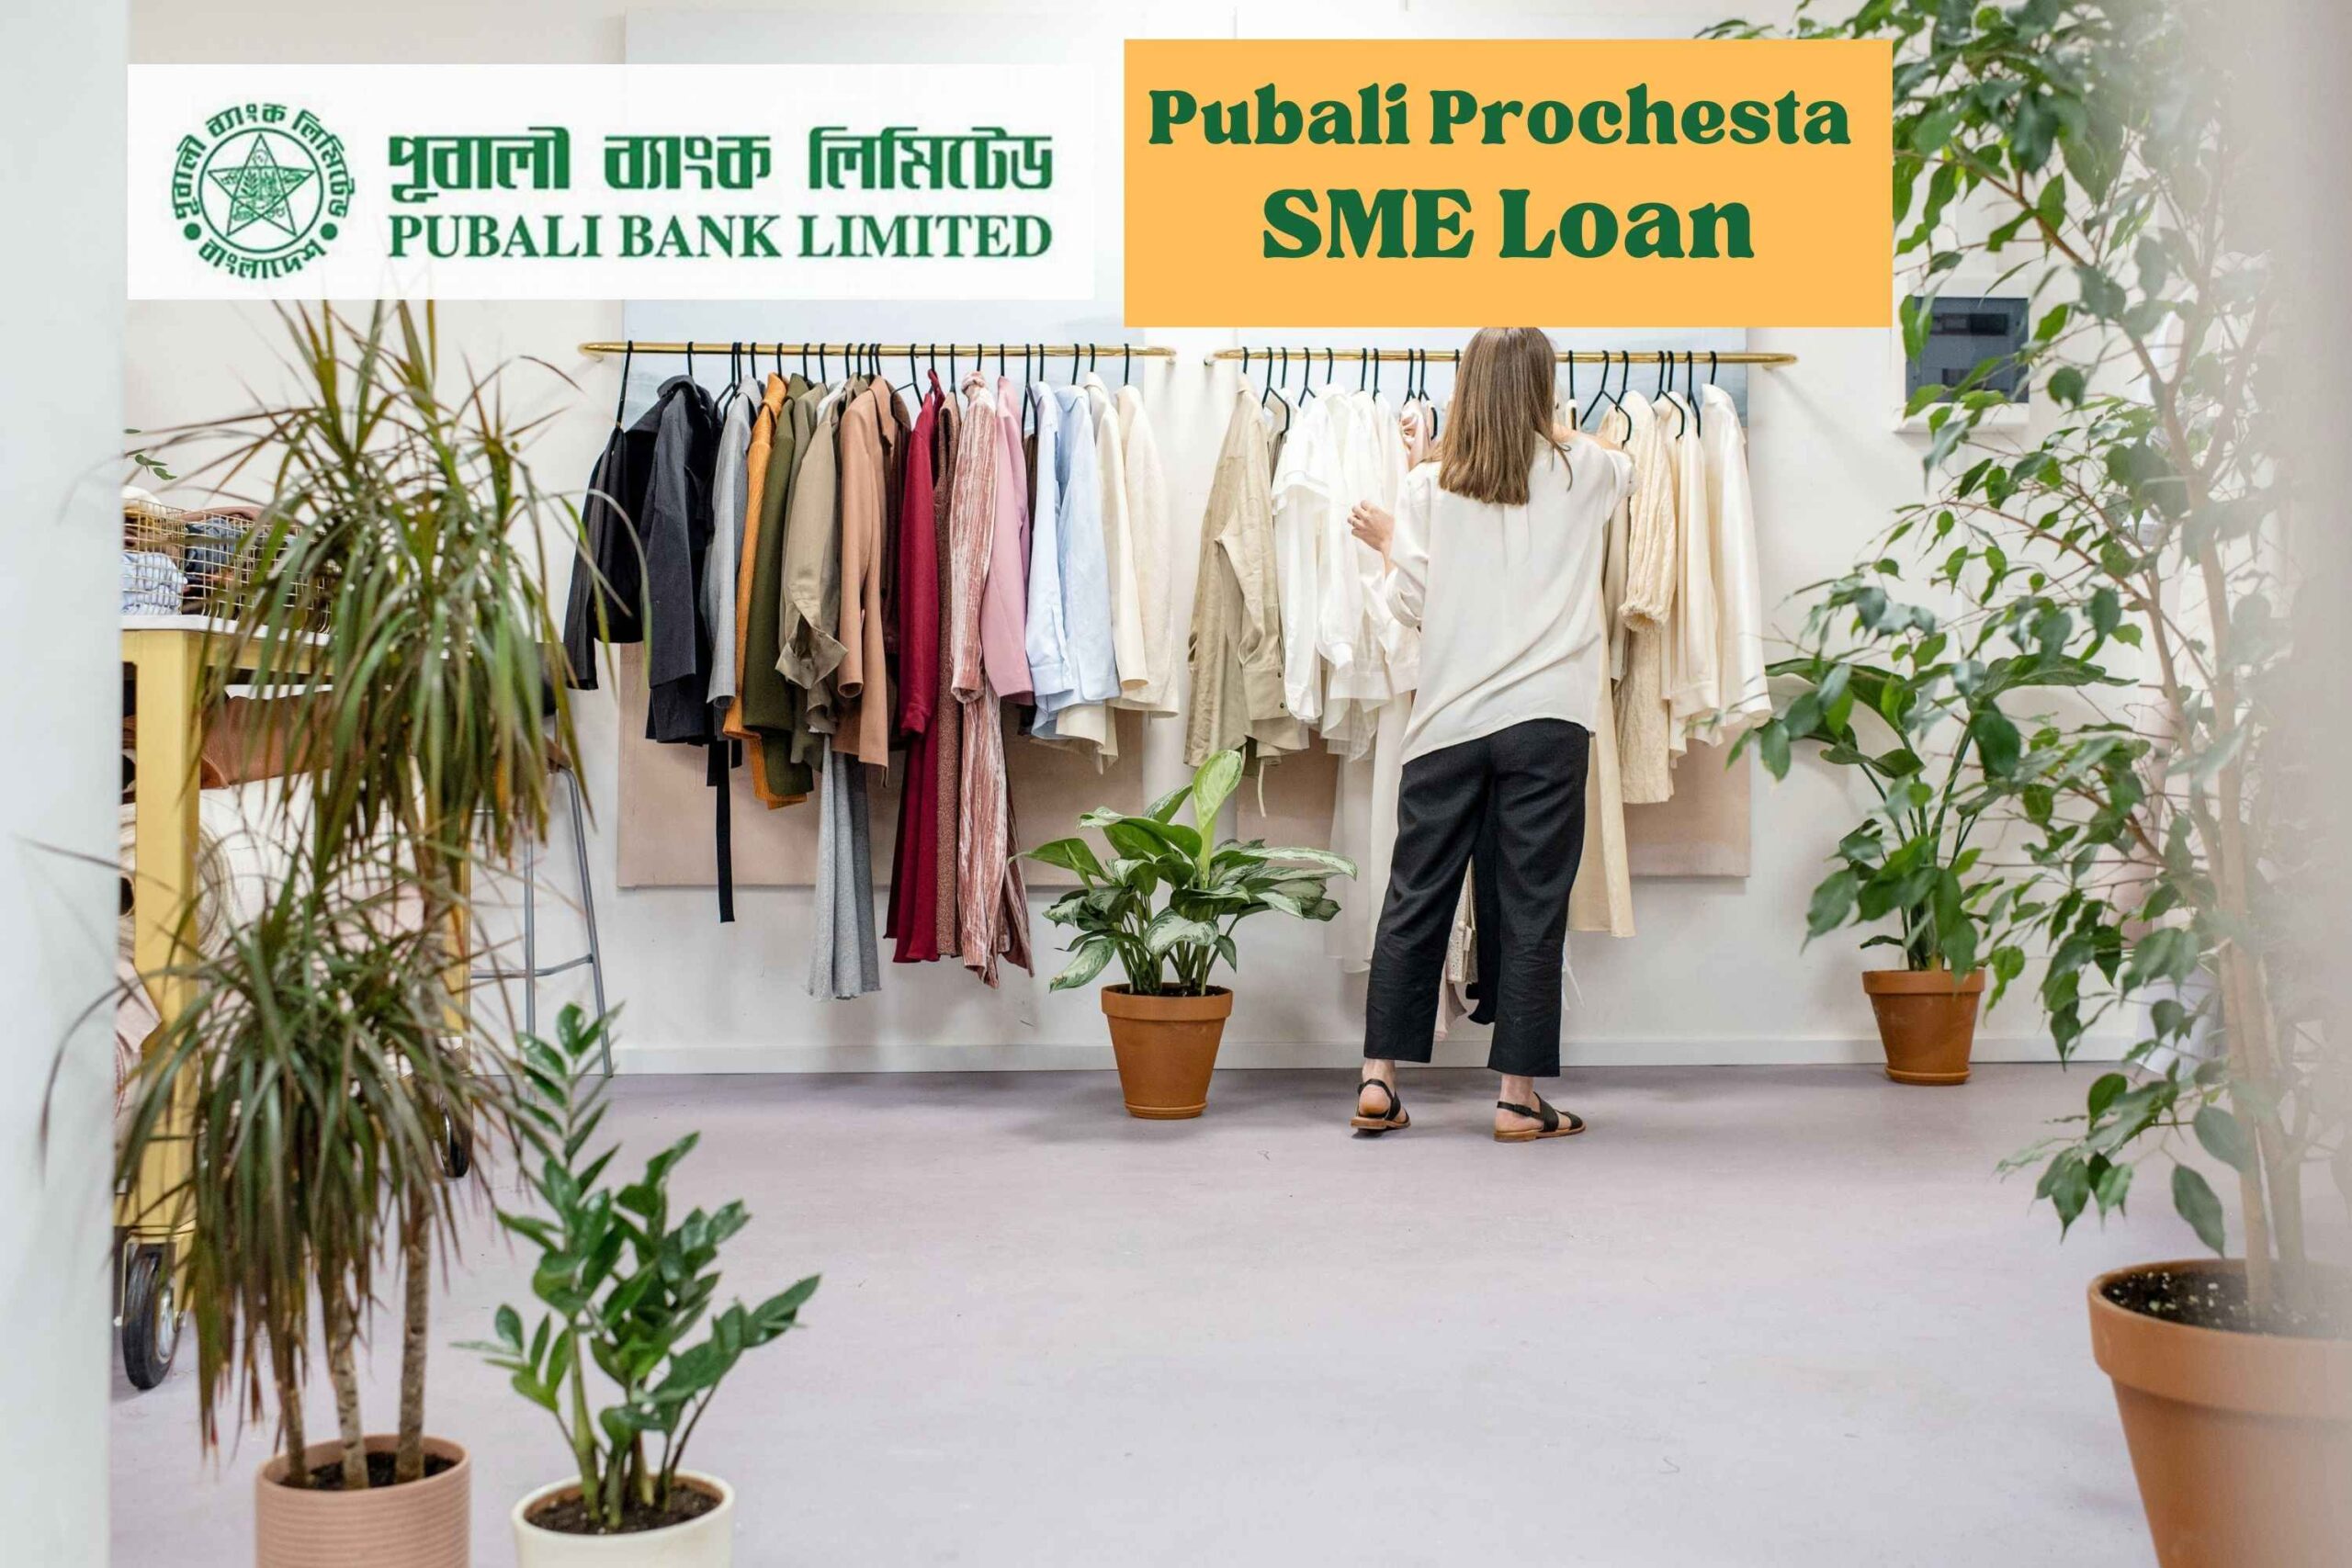 Pubali Prochesta SME Loan